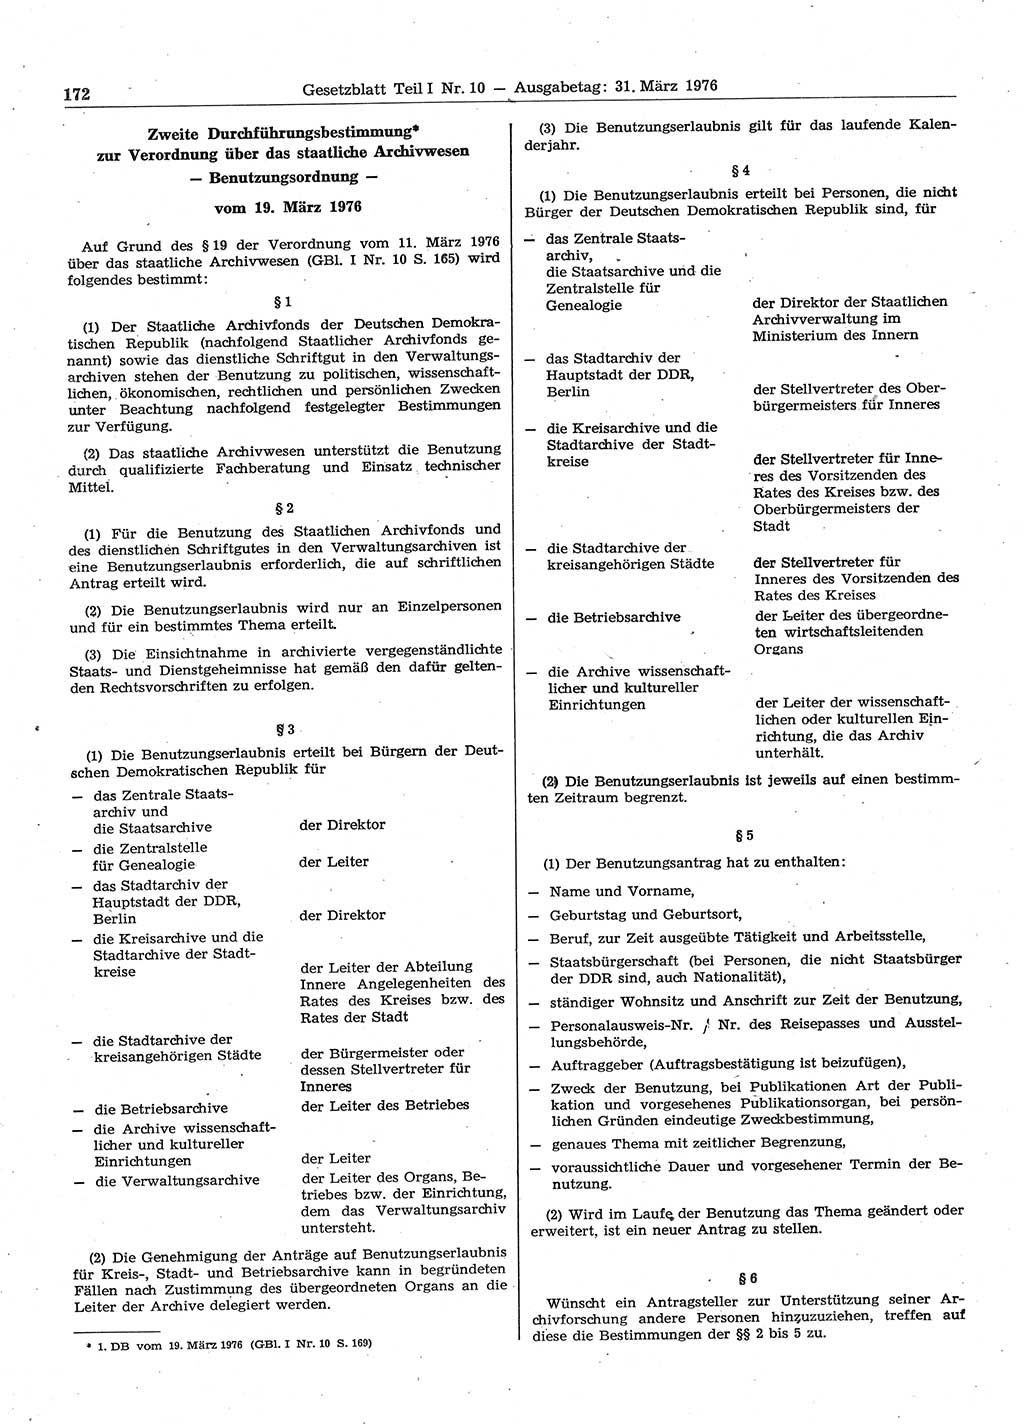 Gesetzblatt (GBl.) der Deutschen Demokratischen Republik (DDR) Teil Ⅰ 1976, Seite 172 (GBl. DDR Ⅰ 1976, S. 172)